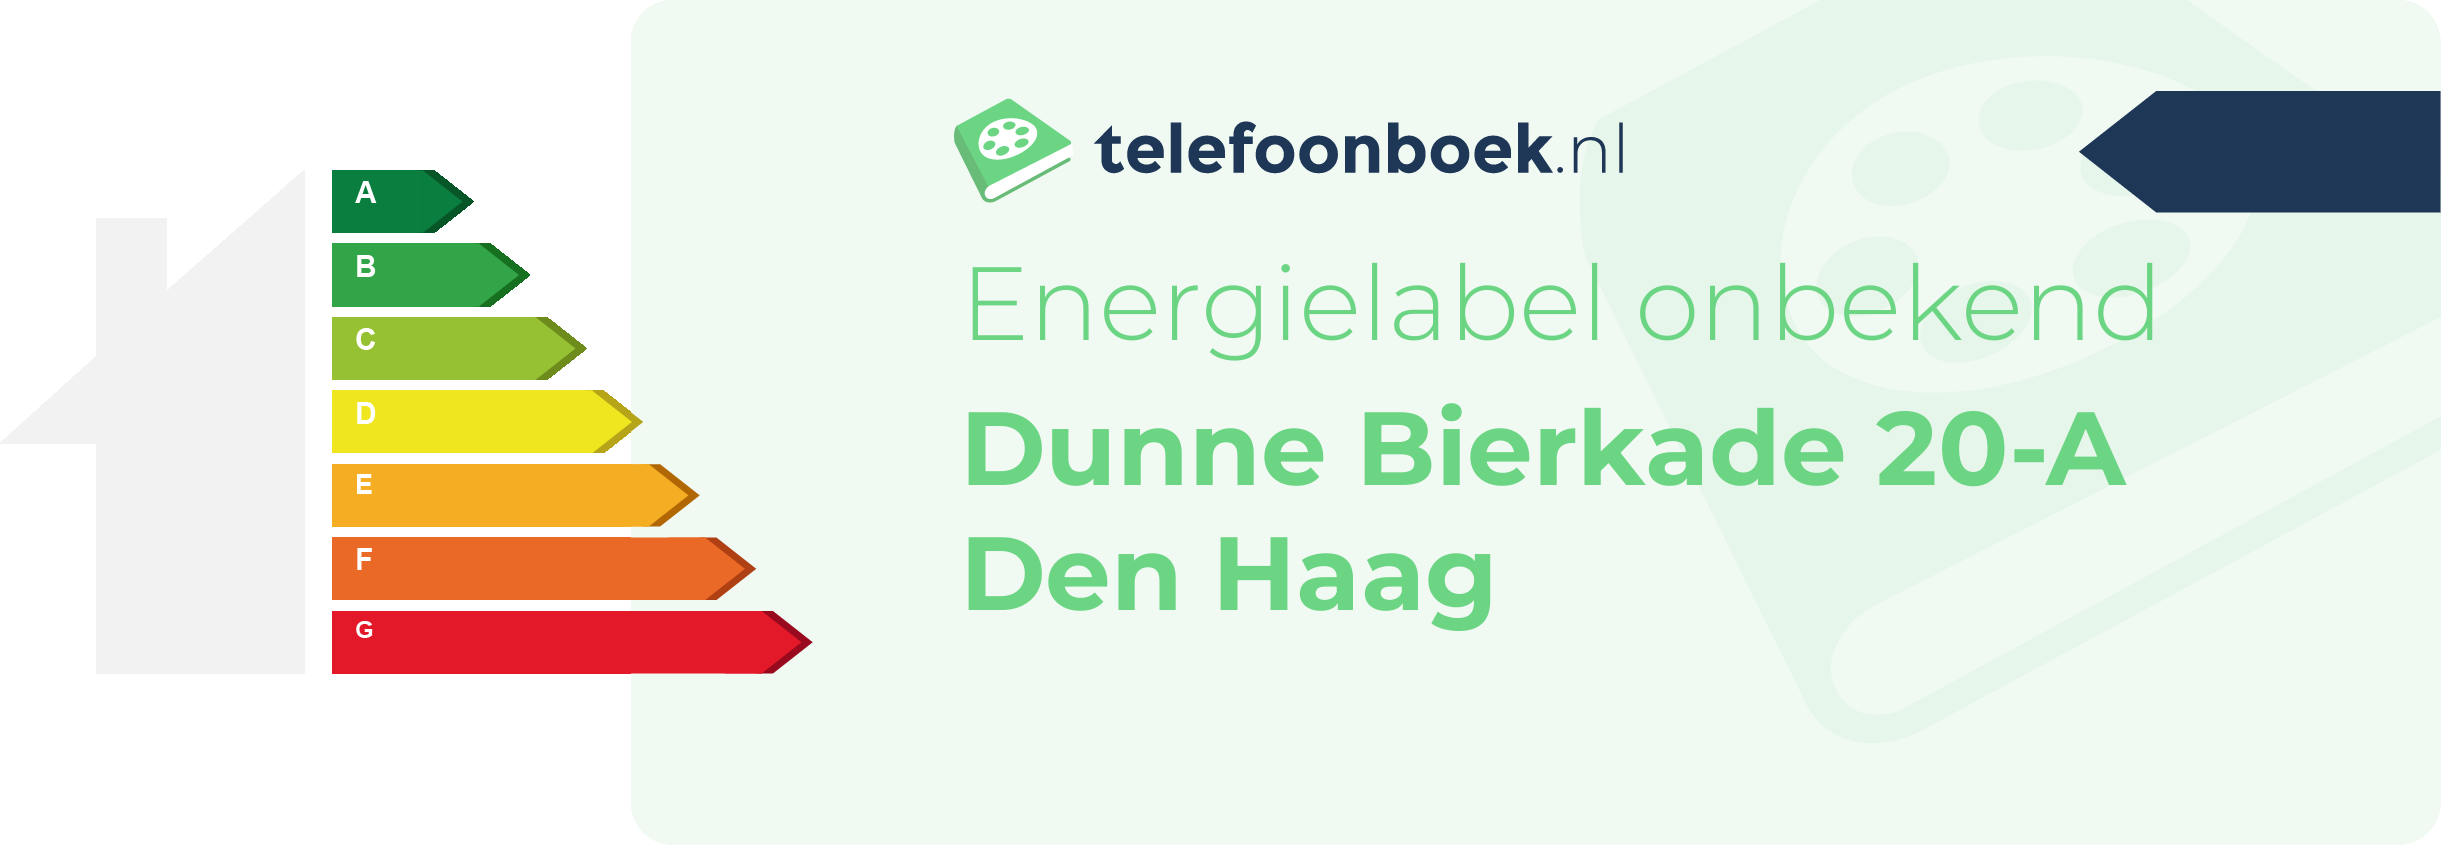 Energielabel Dunne Bierkade 20-A Den Haag